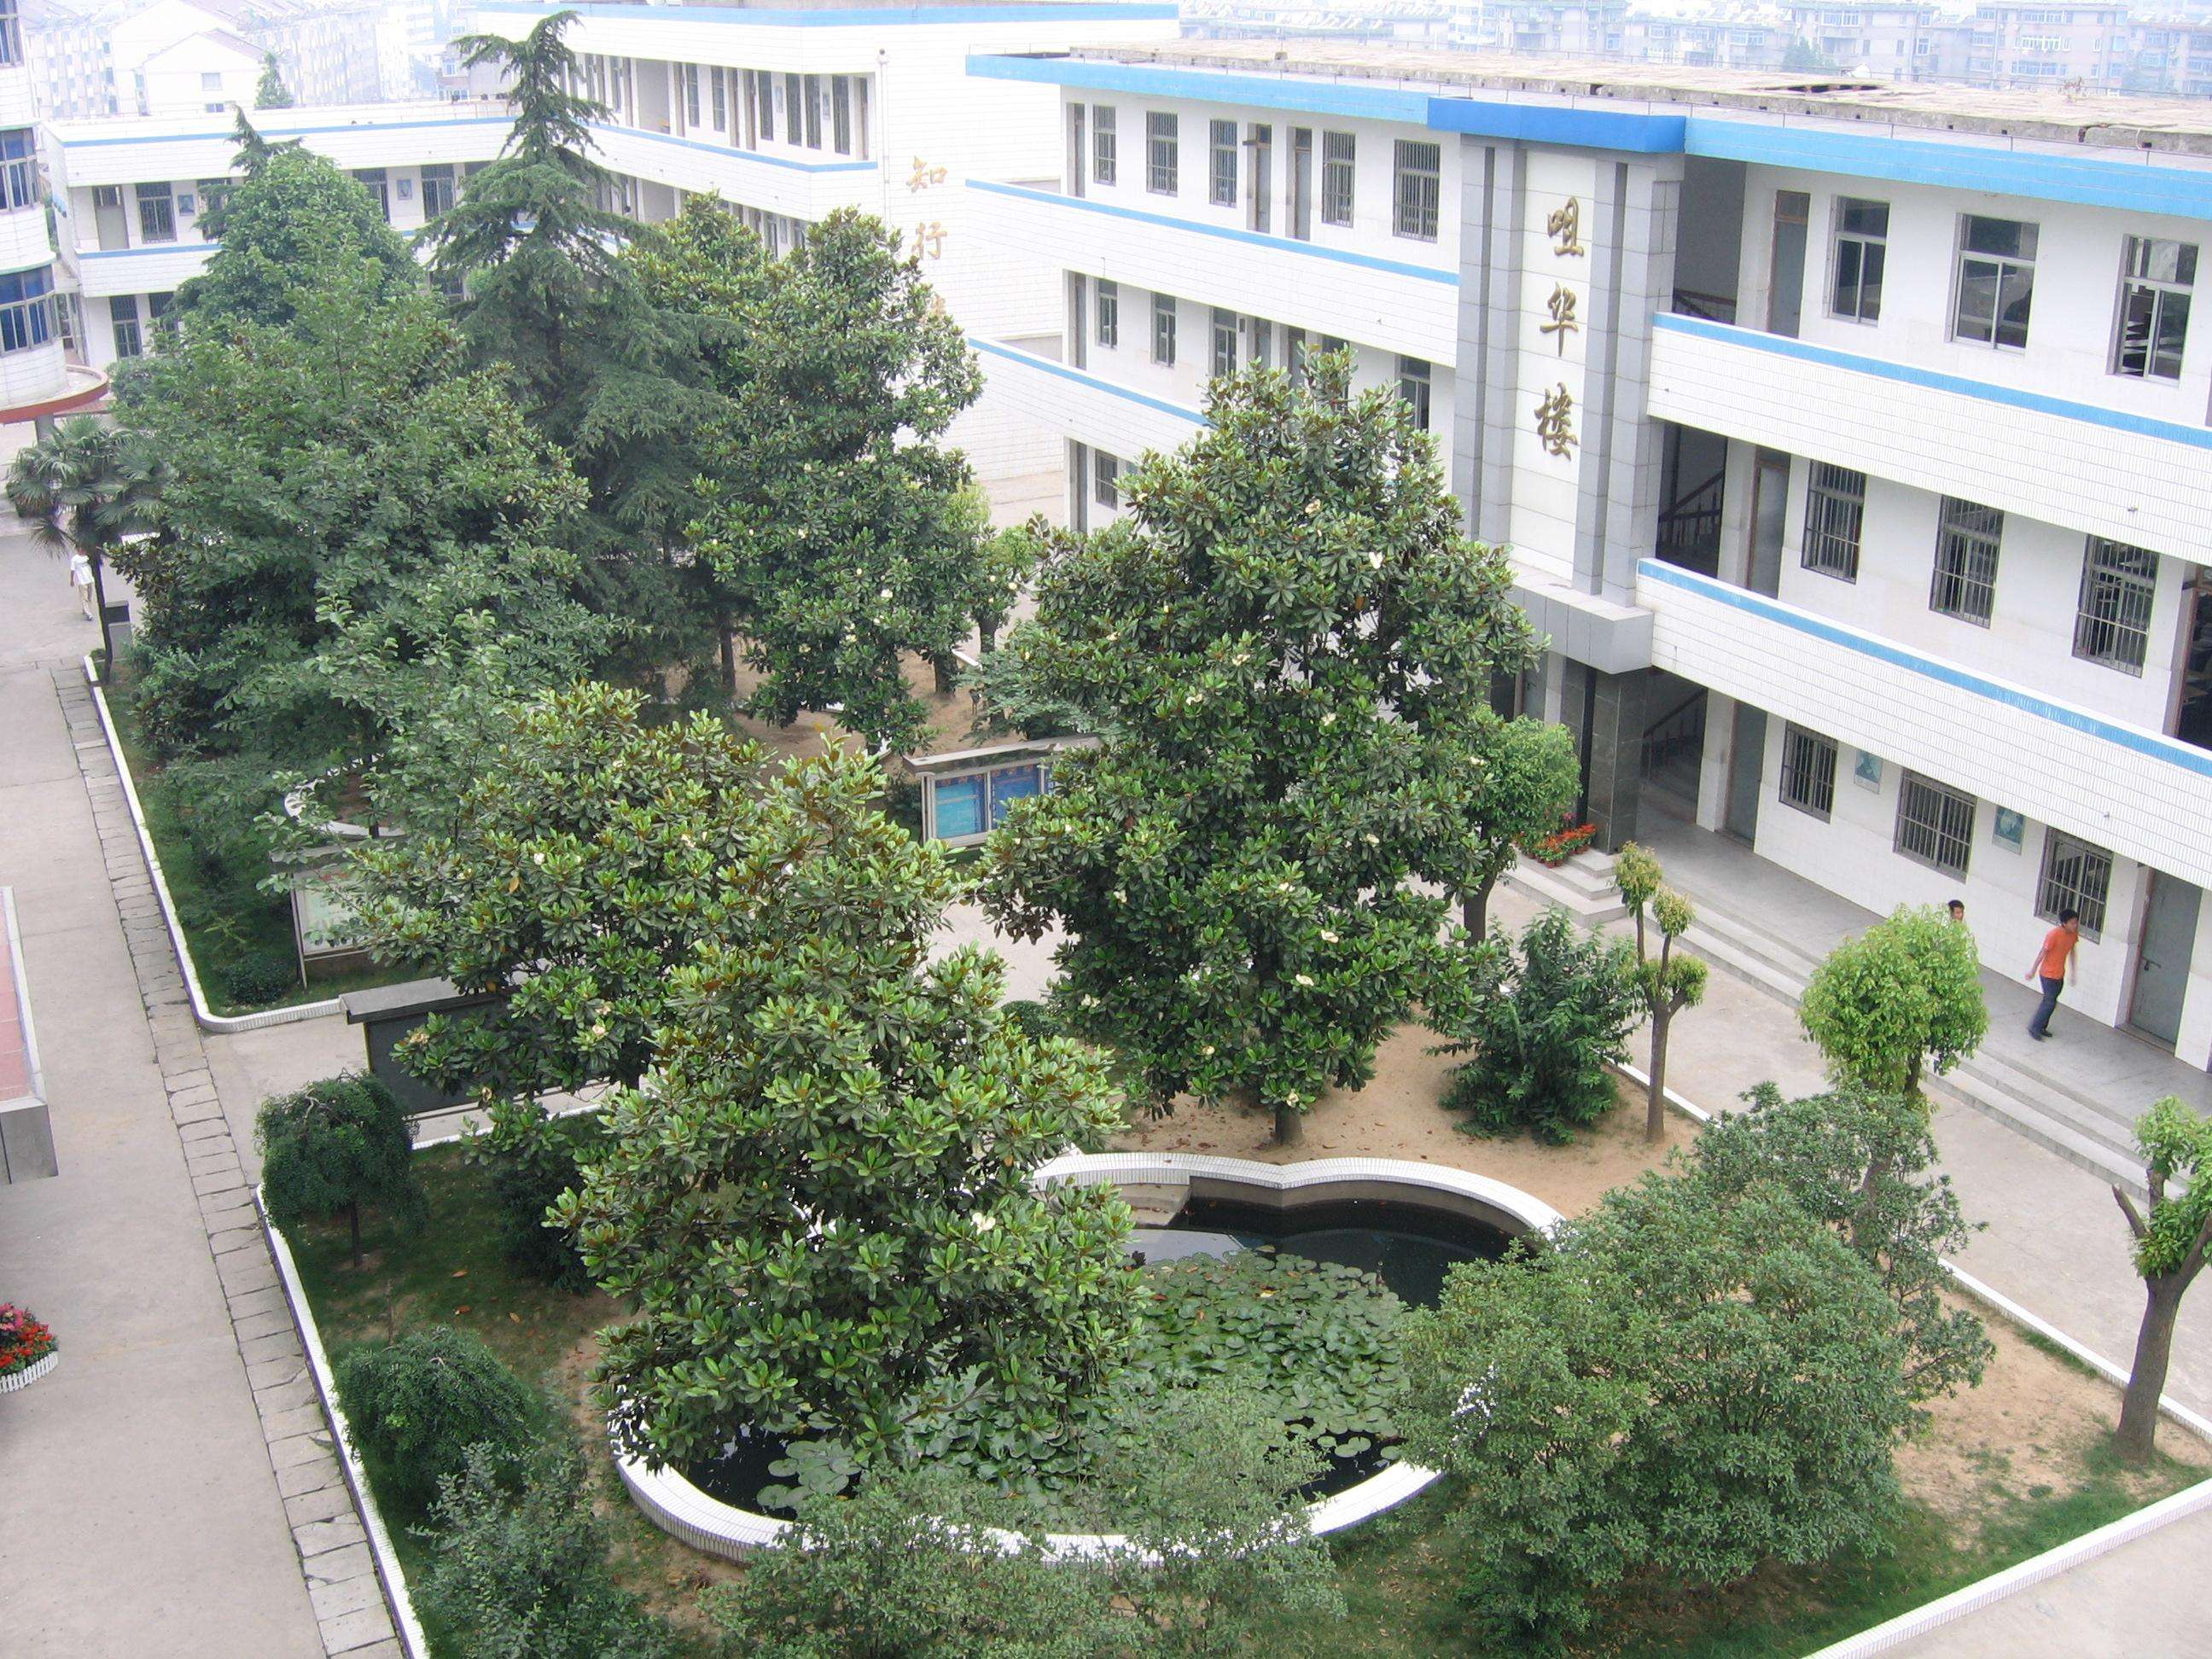 重庆微电子工业学校